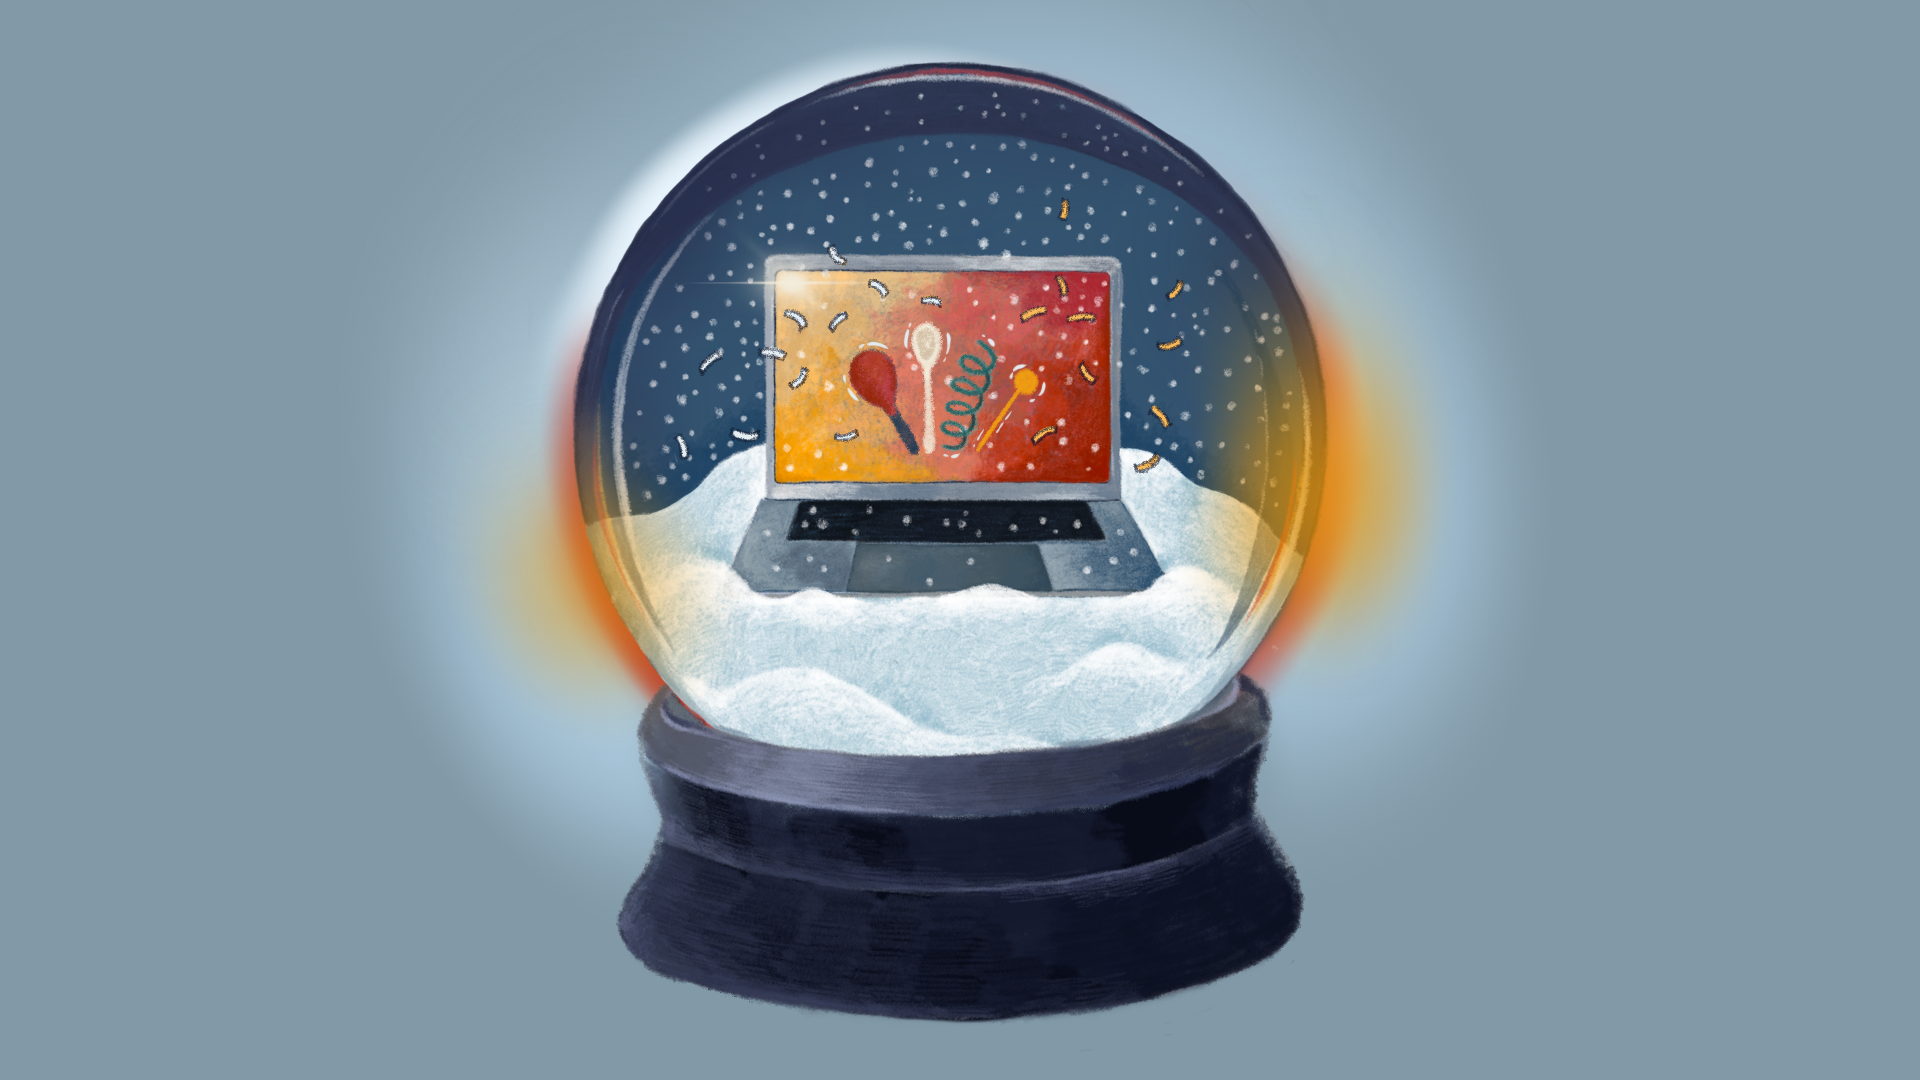 Grafika przedstawia namalowaną na środku śnieżną kulę na podstawie. W środku, na górce ze śniegu stoi laptop z kolorowym ekranem. Grafika na ekranie przedstawia kolorowe grzechotki muzyczne, łyżki i serpentyny. Kula oświetlona jest jasnym światłem, cała grafika umieszczona jest na bladoniebieskim tle.